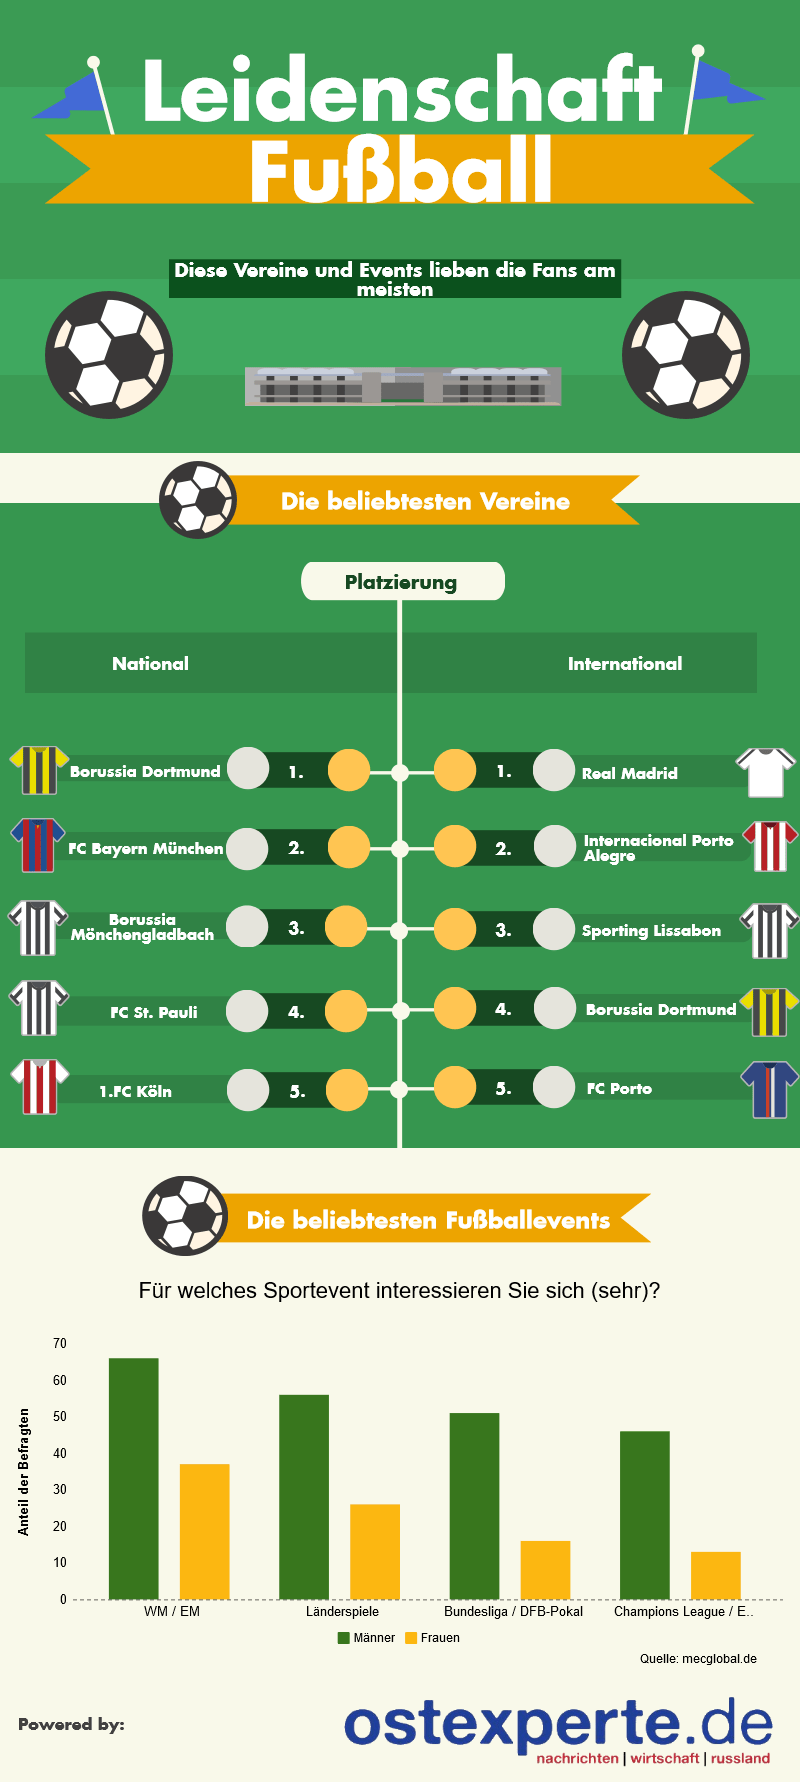 Infografik zu den beliebtesten Fußballvereinen und Sportevents